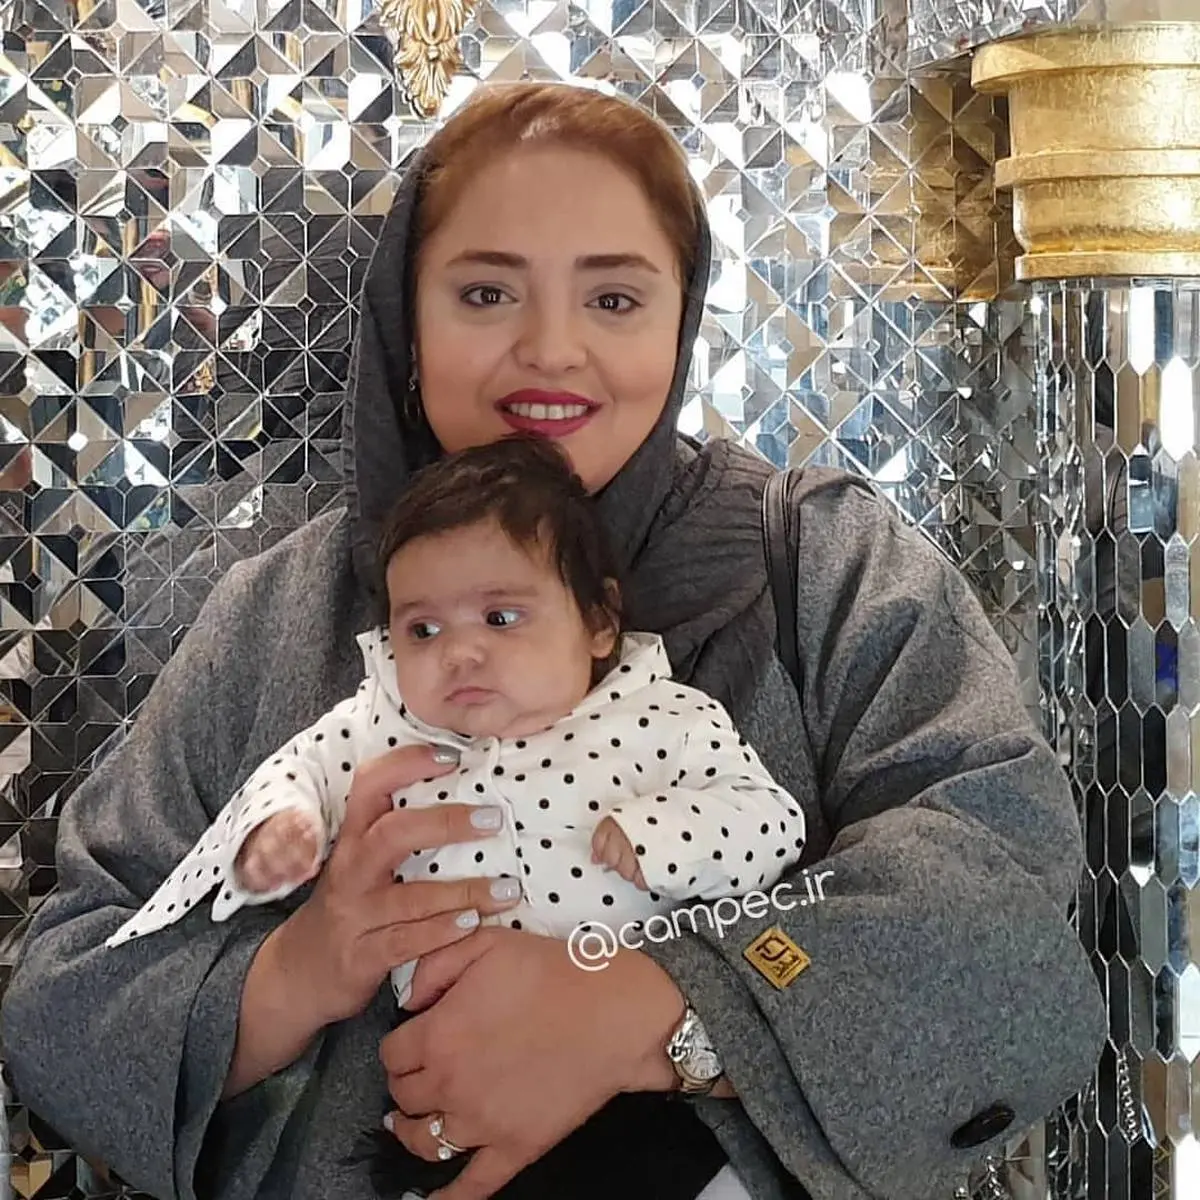 نرگس محمدی مادر شد | شباهت عجیب شوهر ستایش به فرزندش